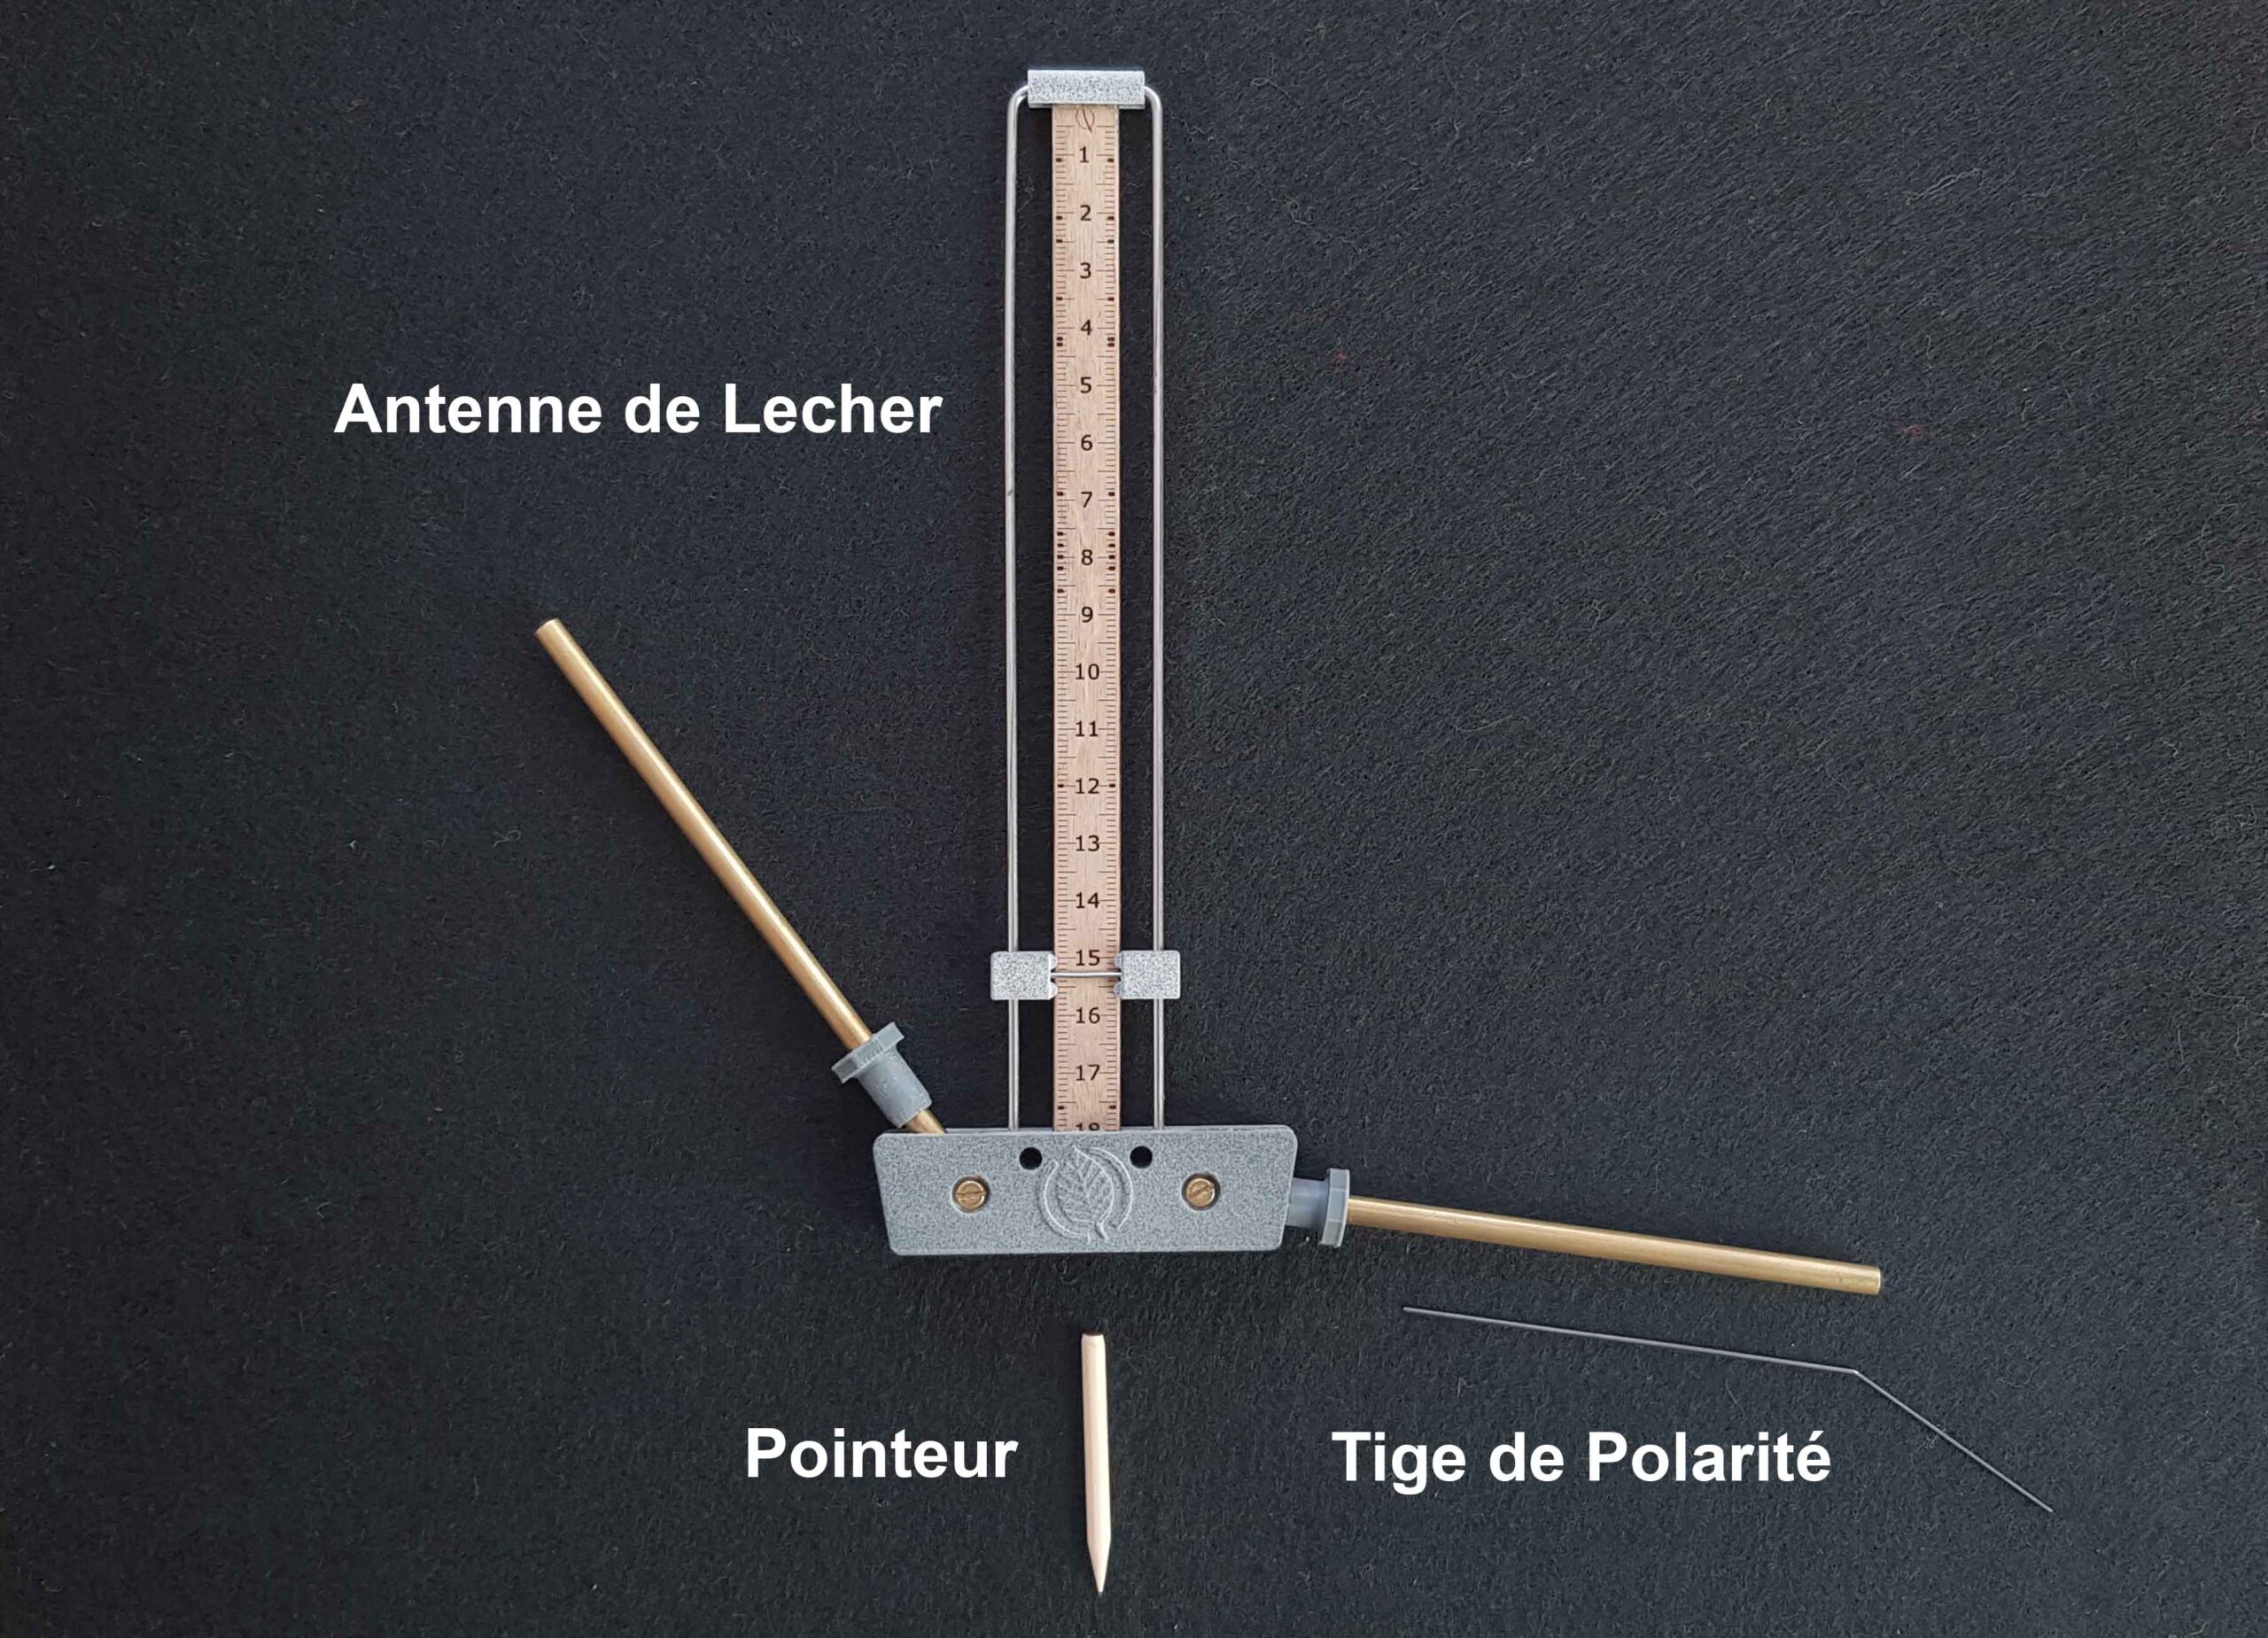 Antenne Lecher ou antenne « de » Lecher ? – Site ERGE